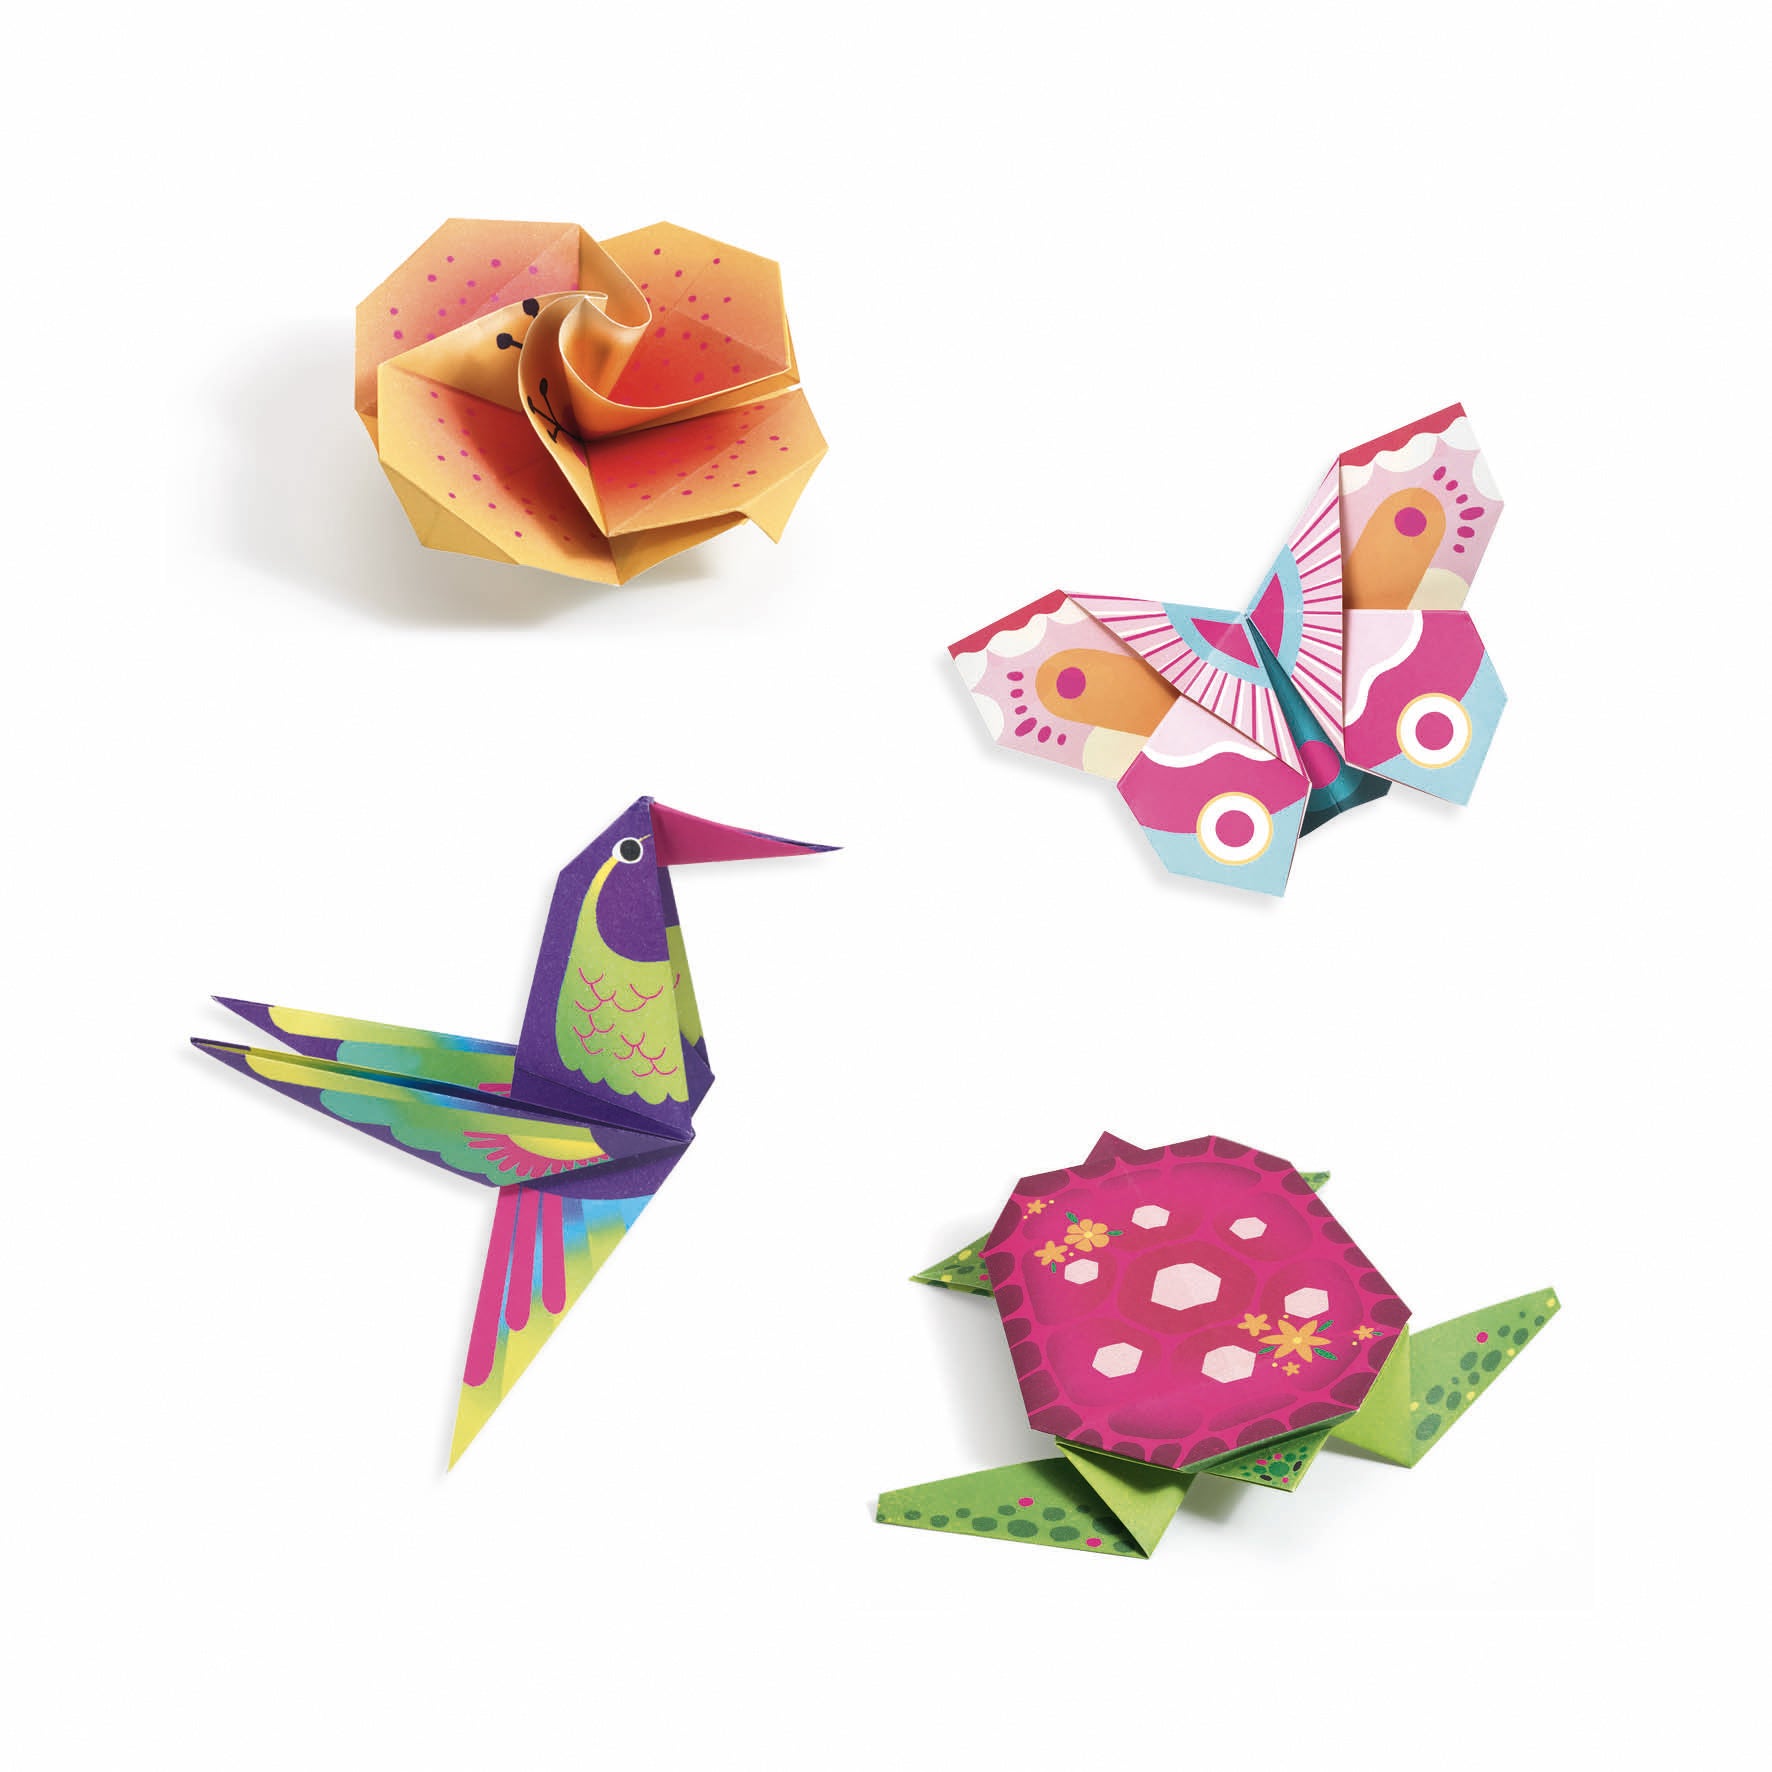 Papiroflexia origami "Trópicos" Djeco-Djeco-PetitGegant